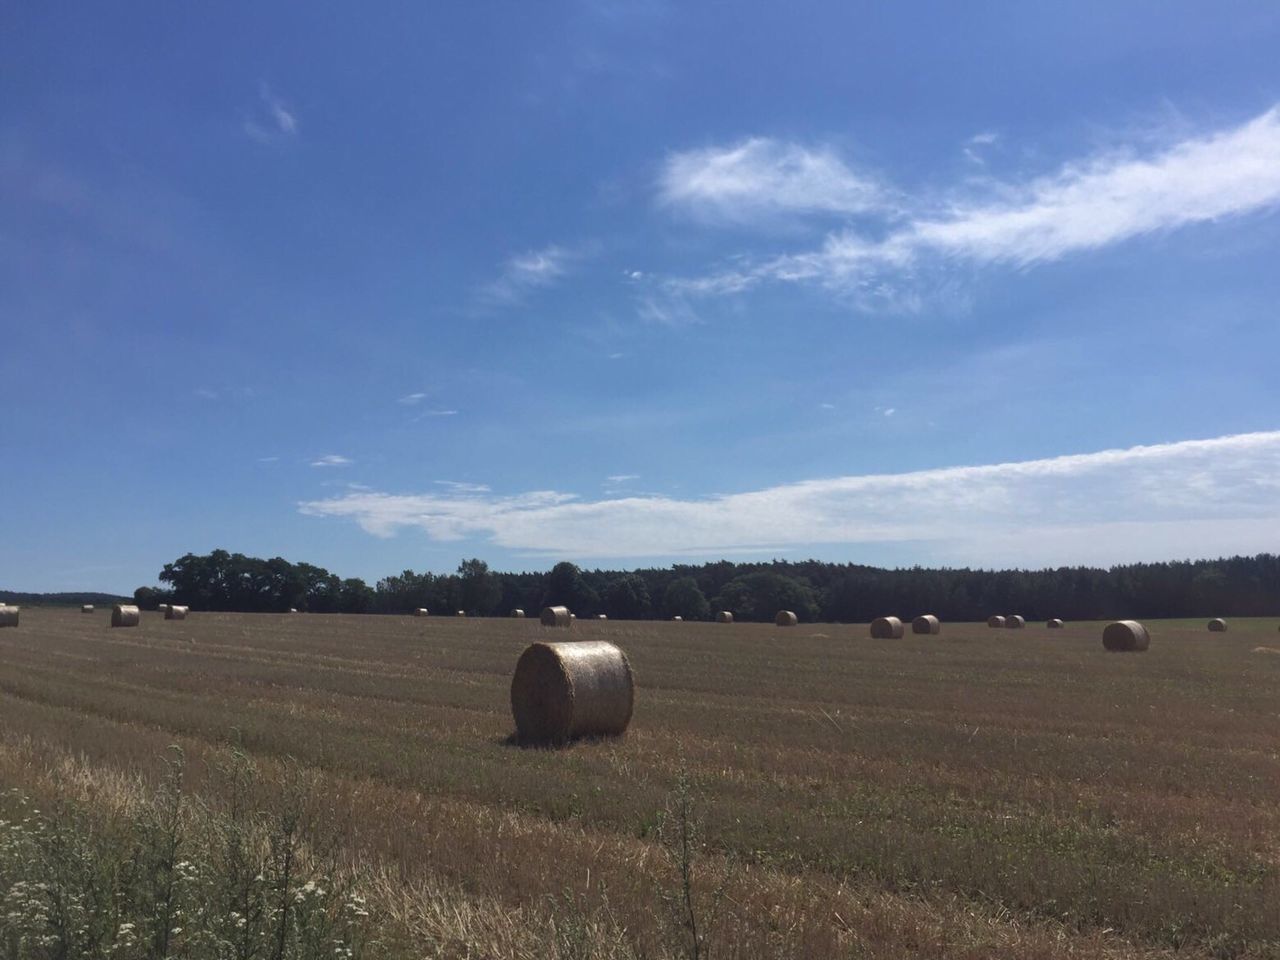 Hay bales on field against blue sky